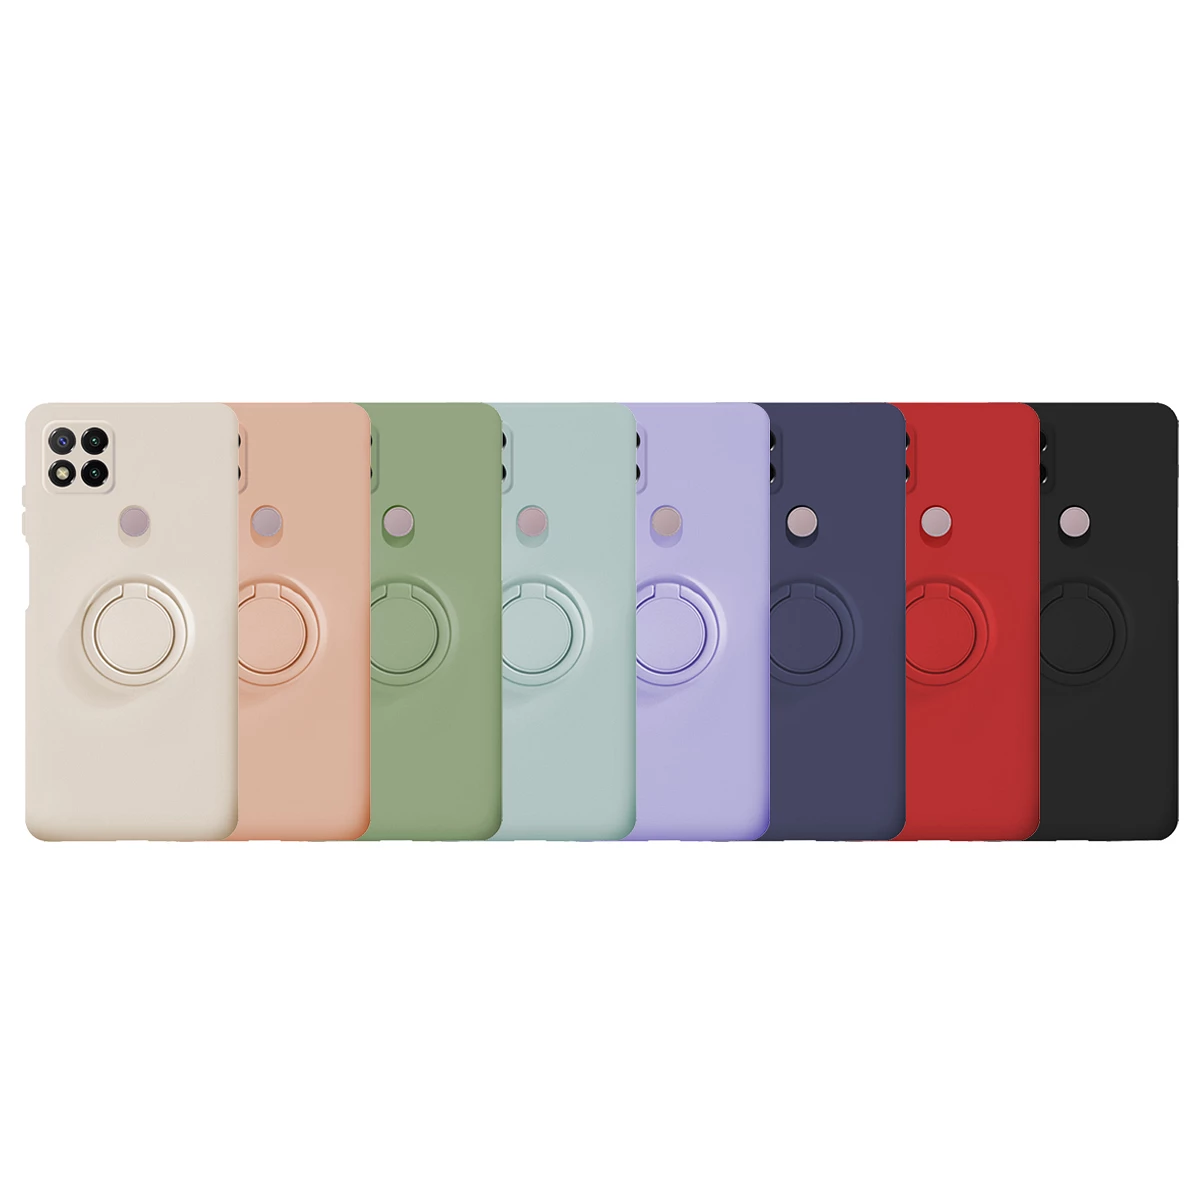 Funda suave y de color para el Xiaomi Redmi 9C